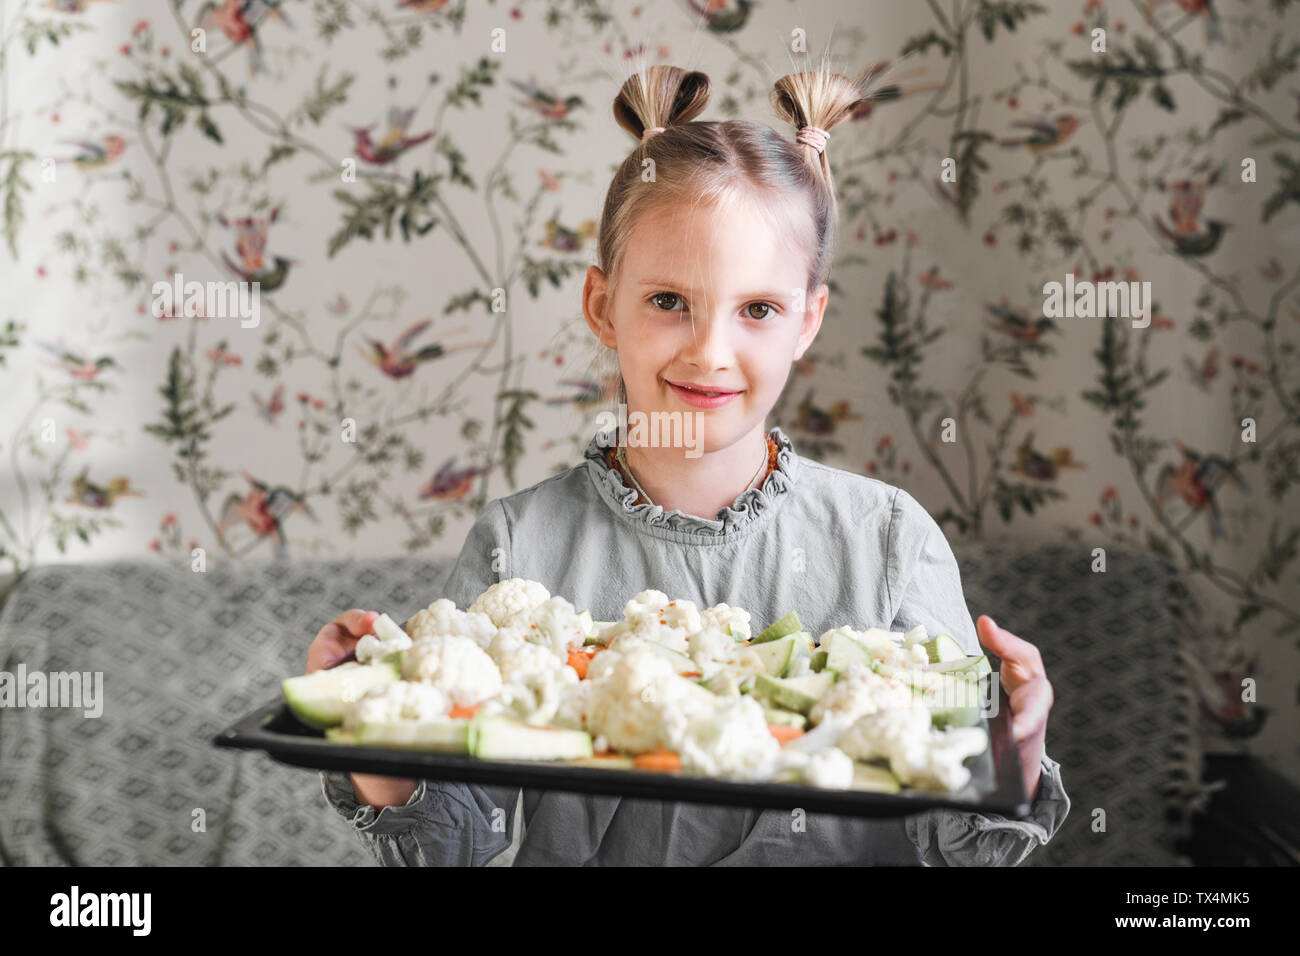 Portrait de jeune fille blonde avec de cuisson de légumes crus Banque D'Images